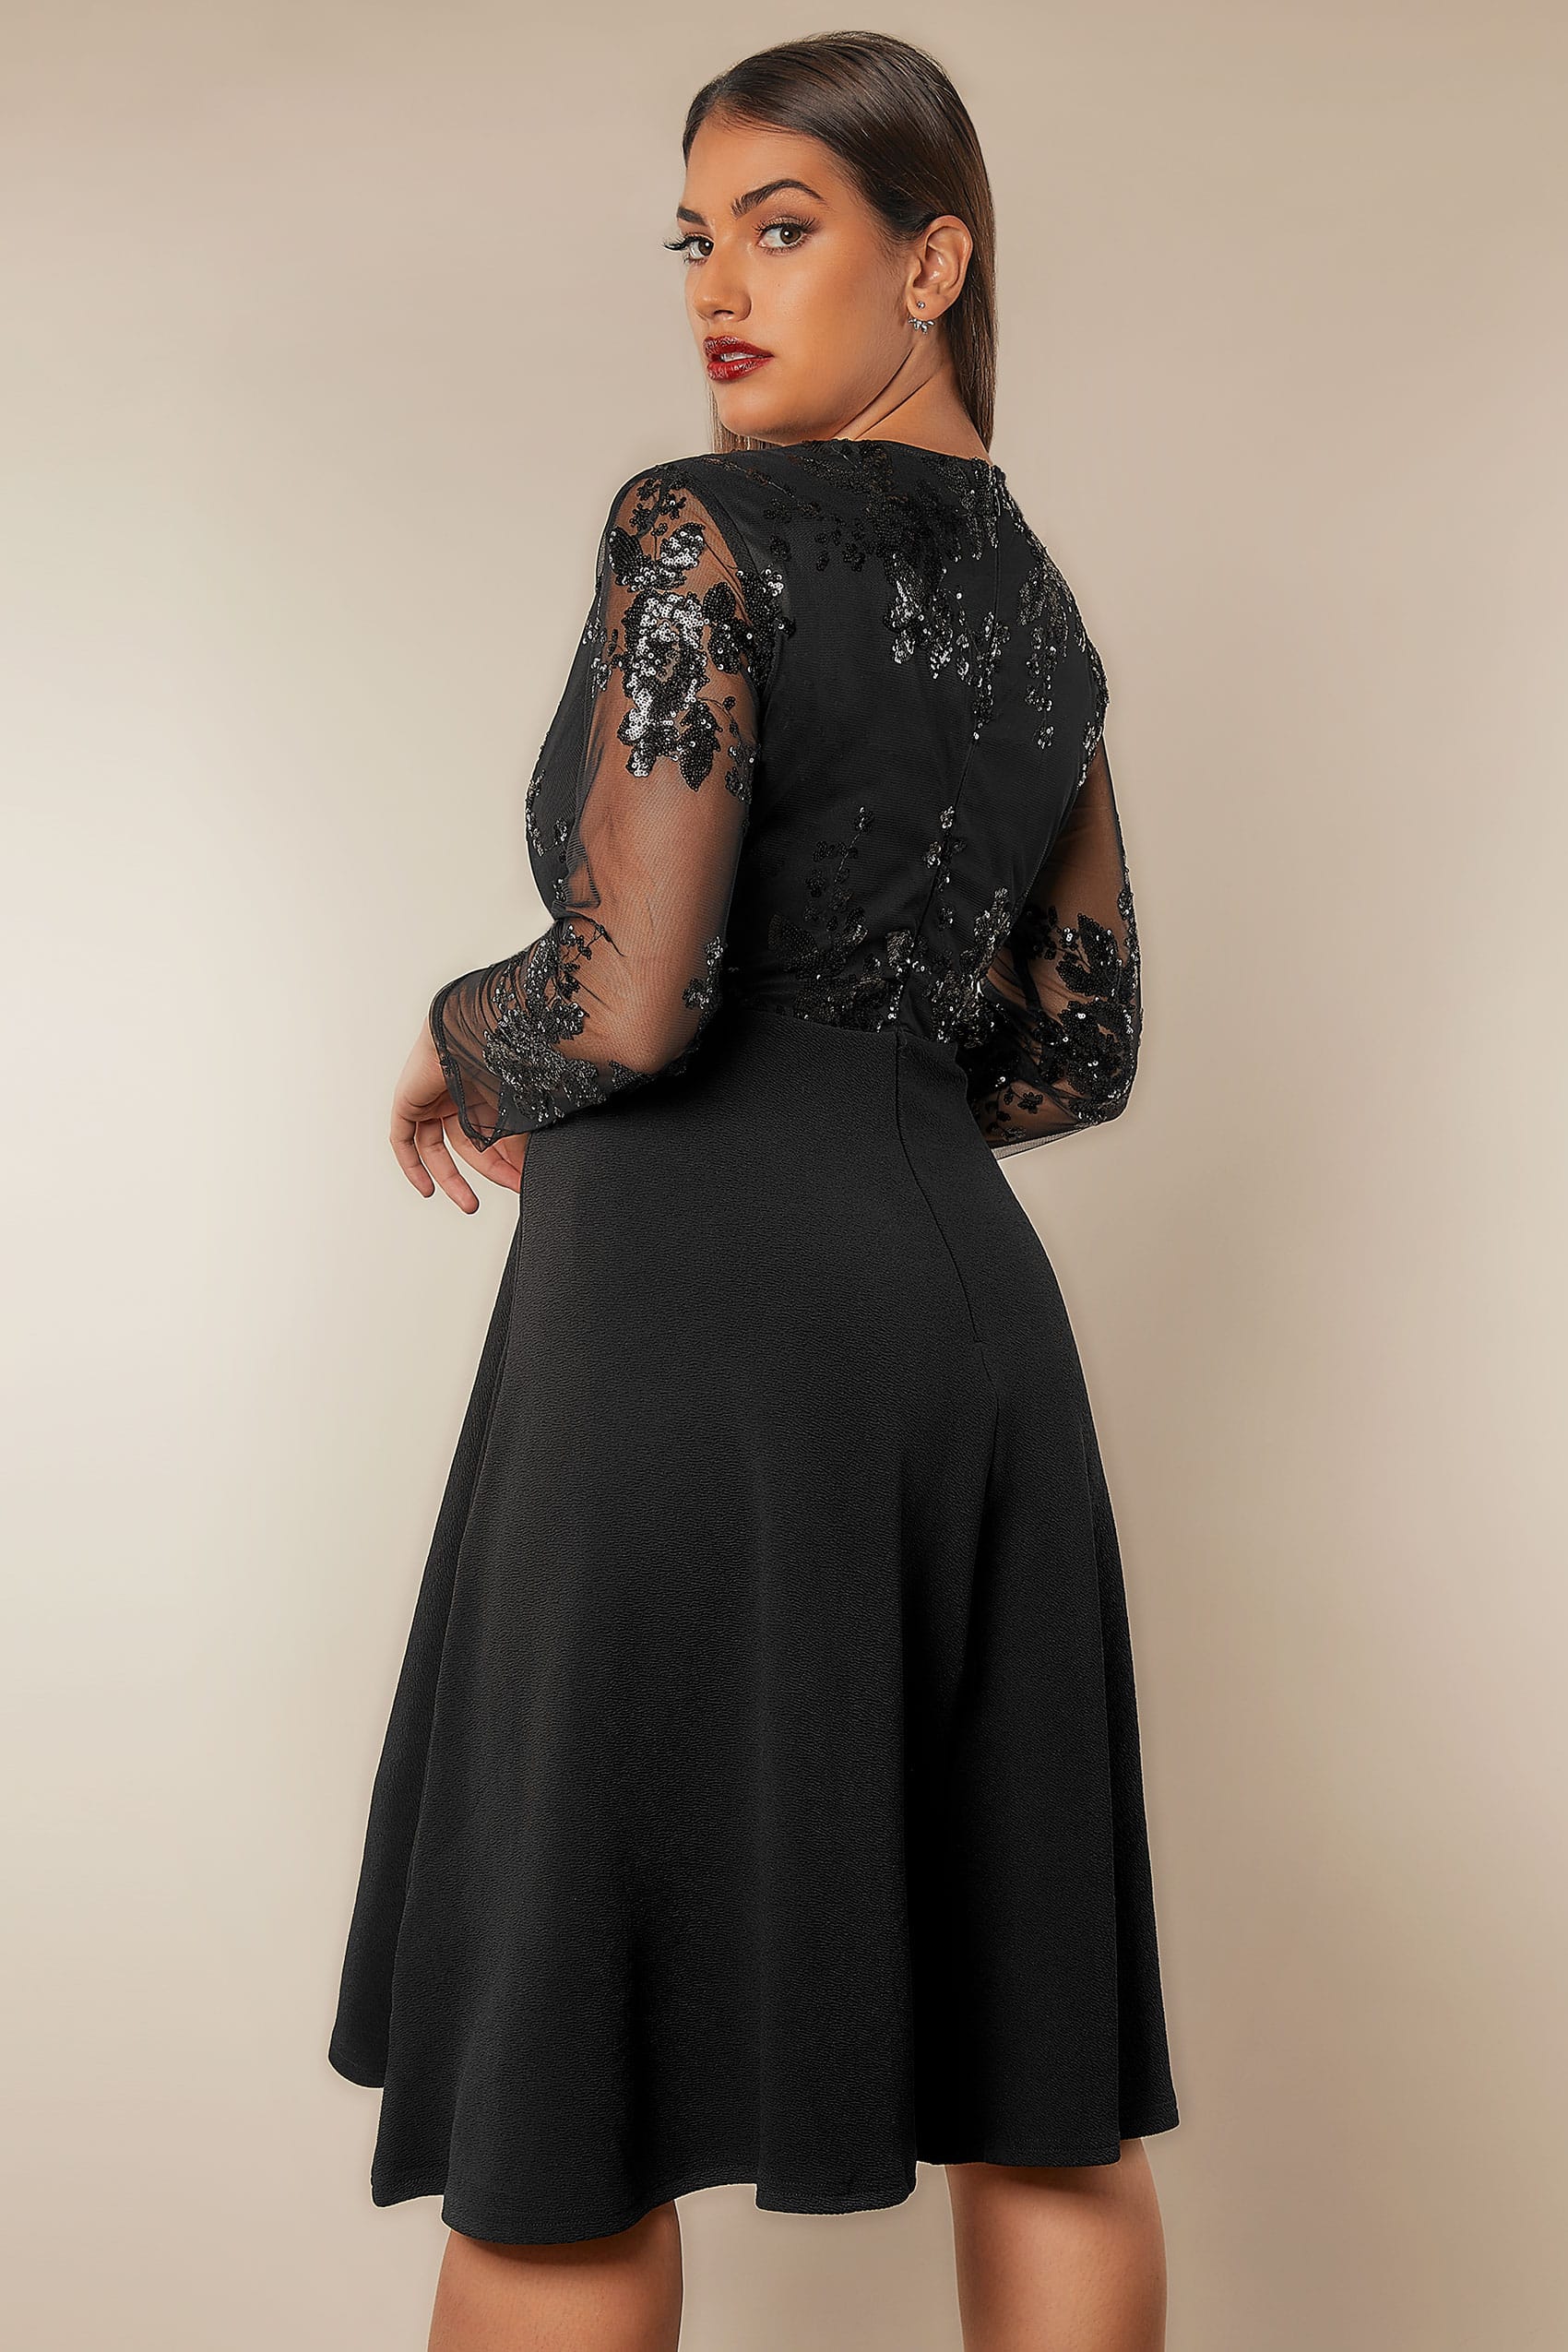 Plus Size Black Mesh Floral Sequin Maxi Dress | Sequin 